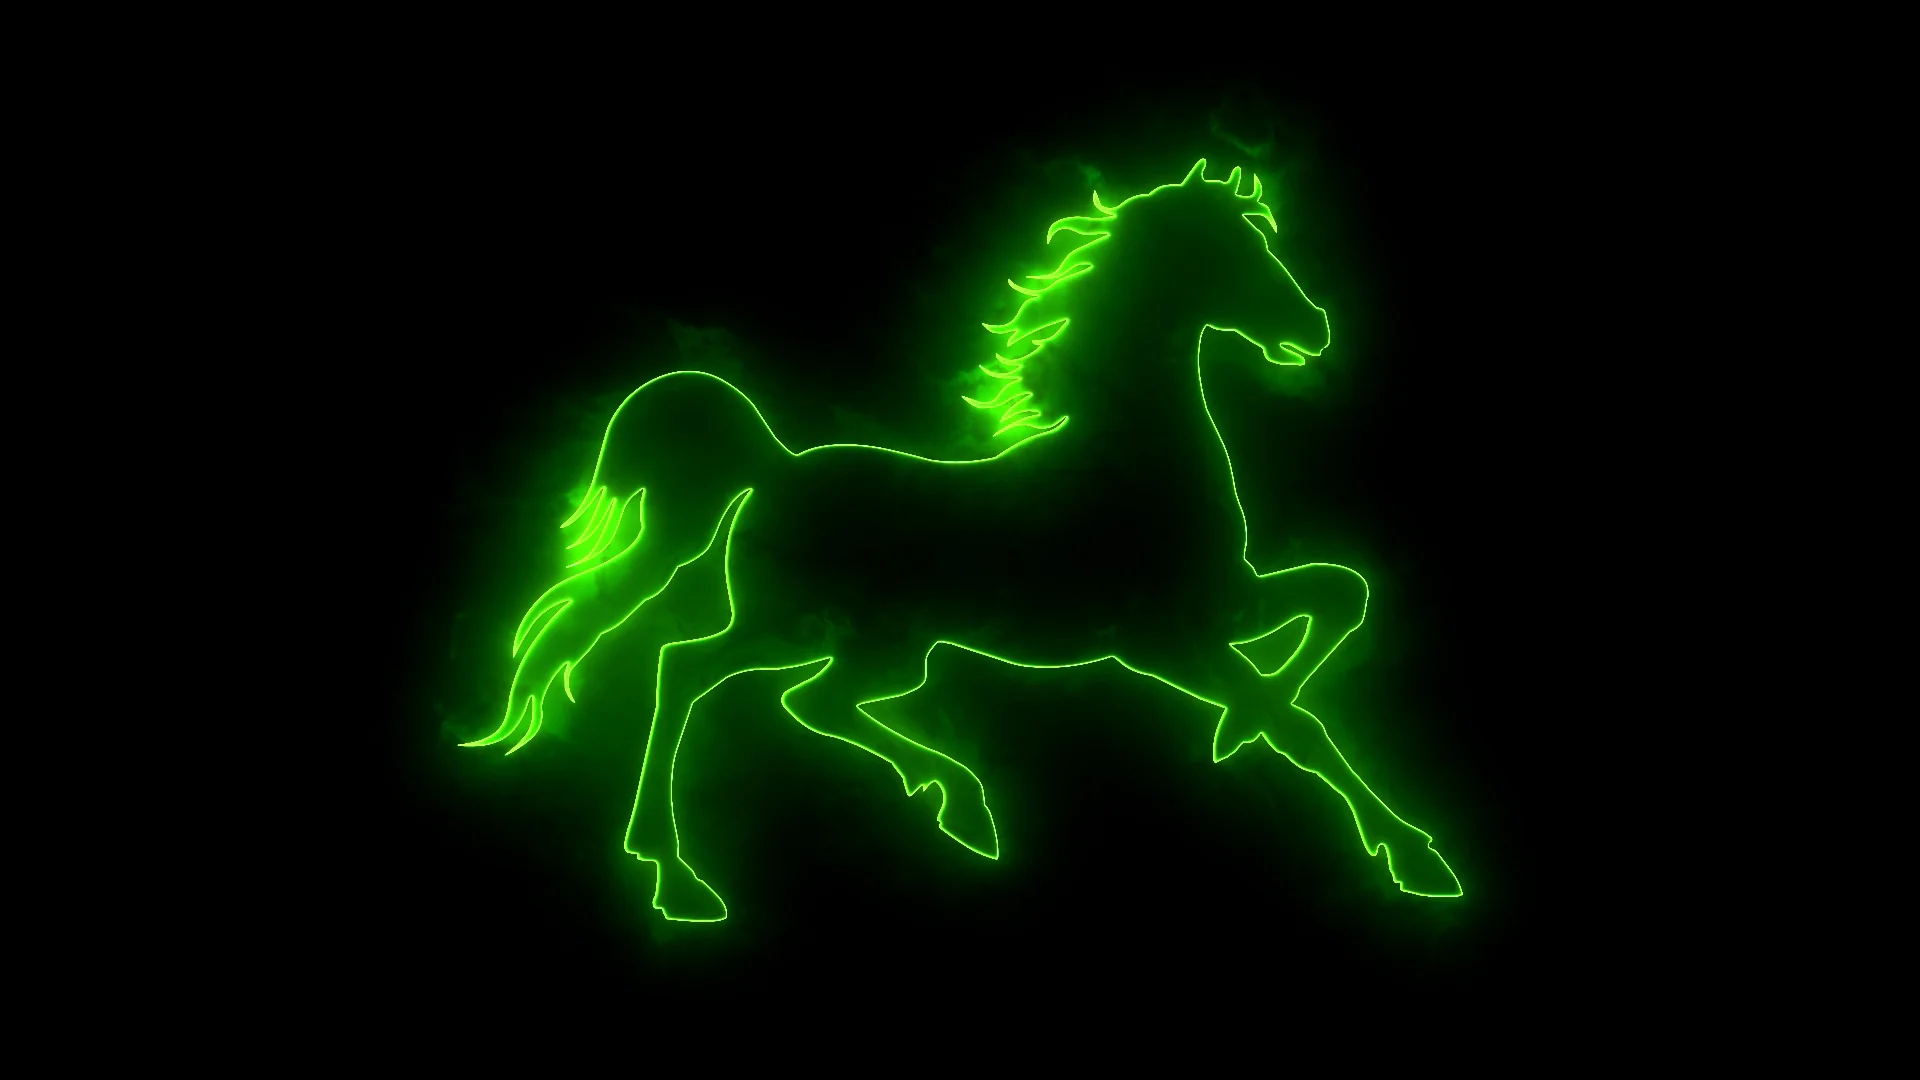 neon horse wallpaper